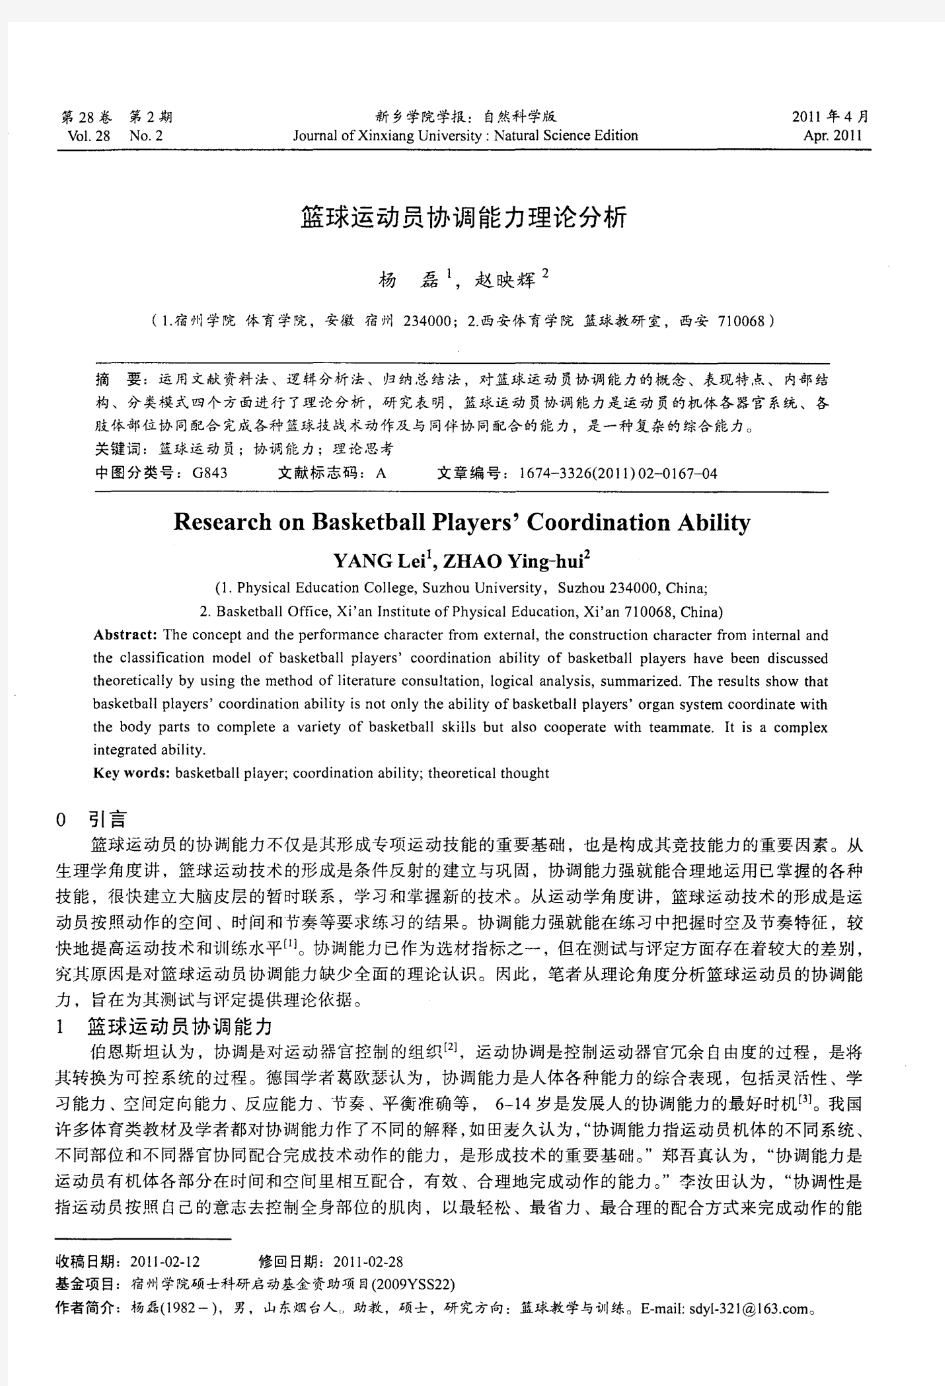 篮球运动员协调能力理论分析